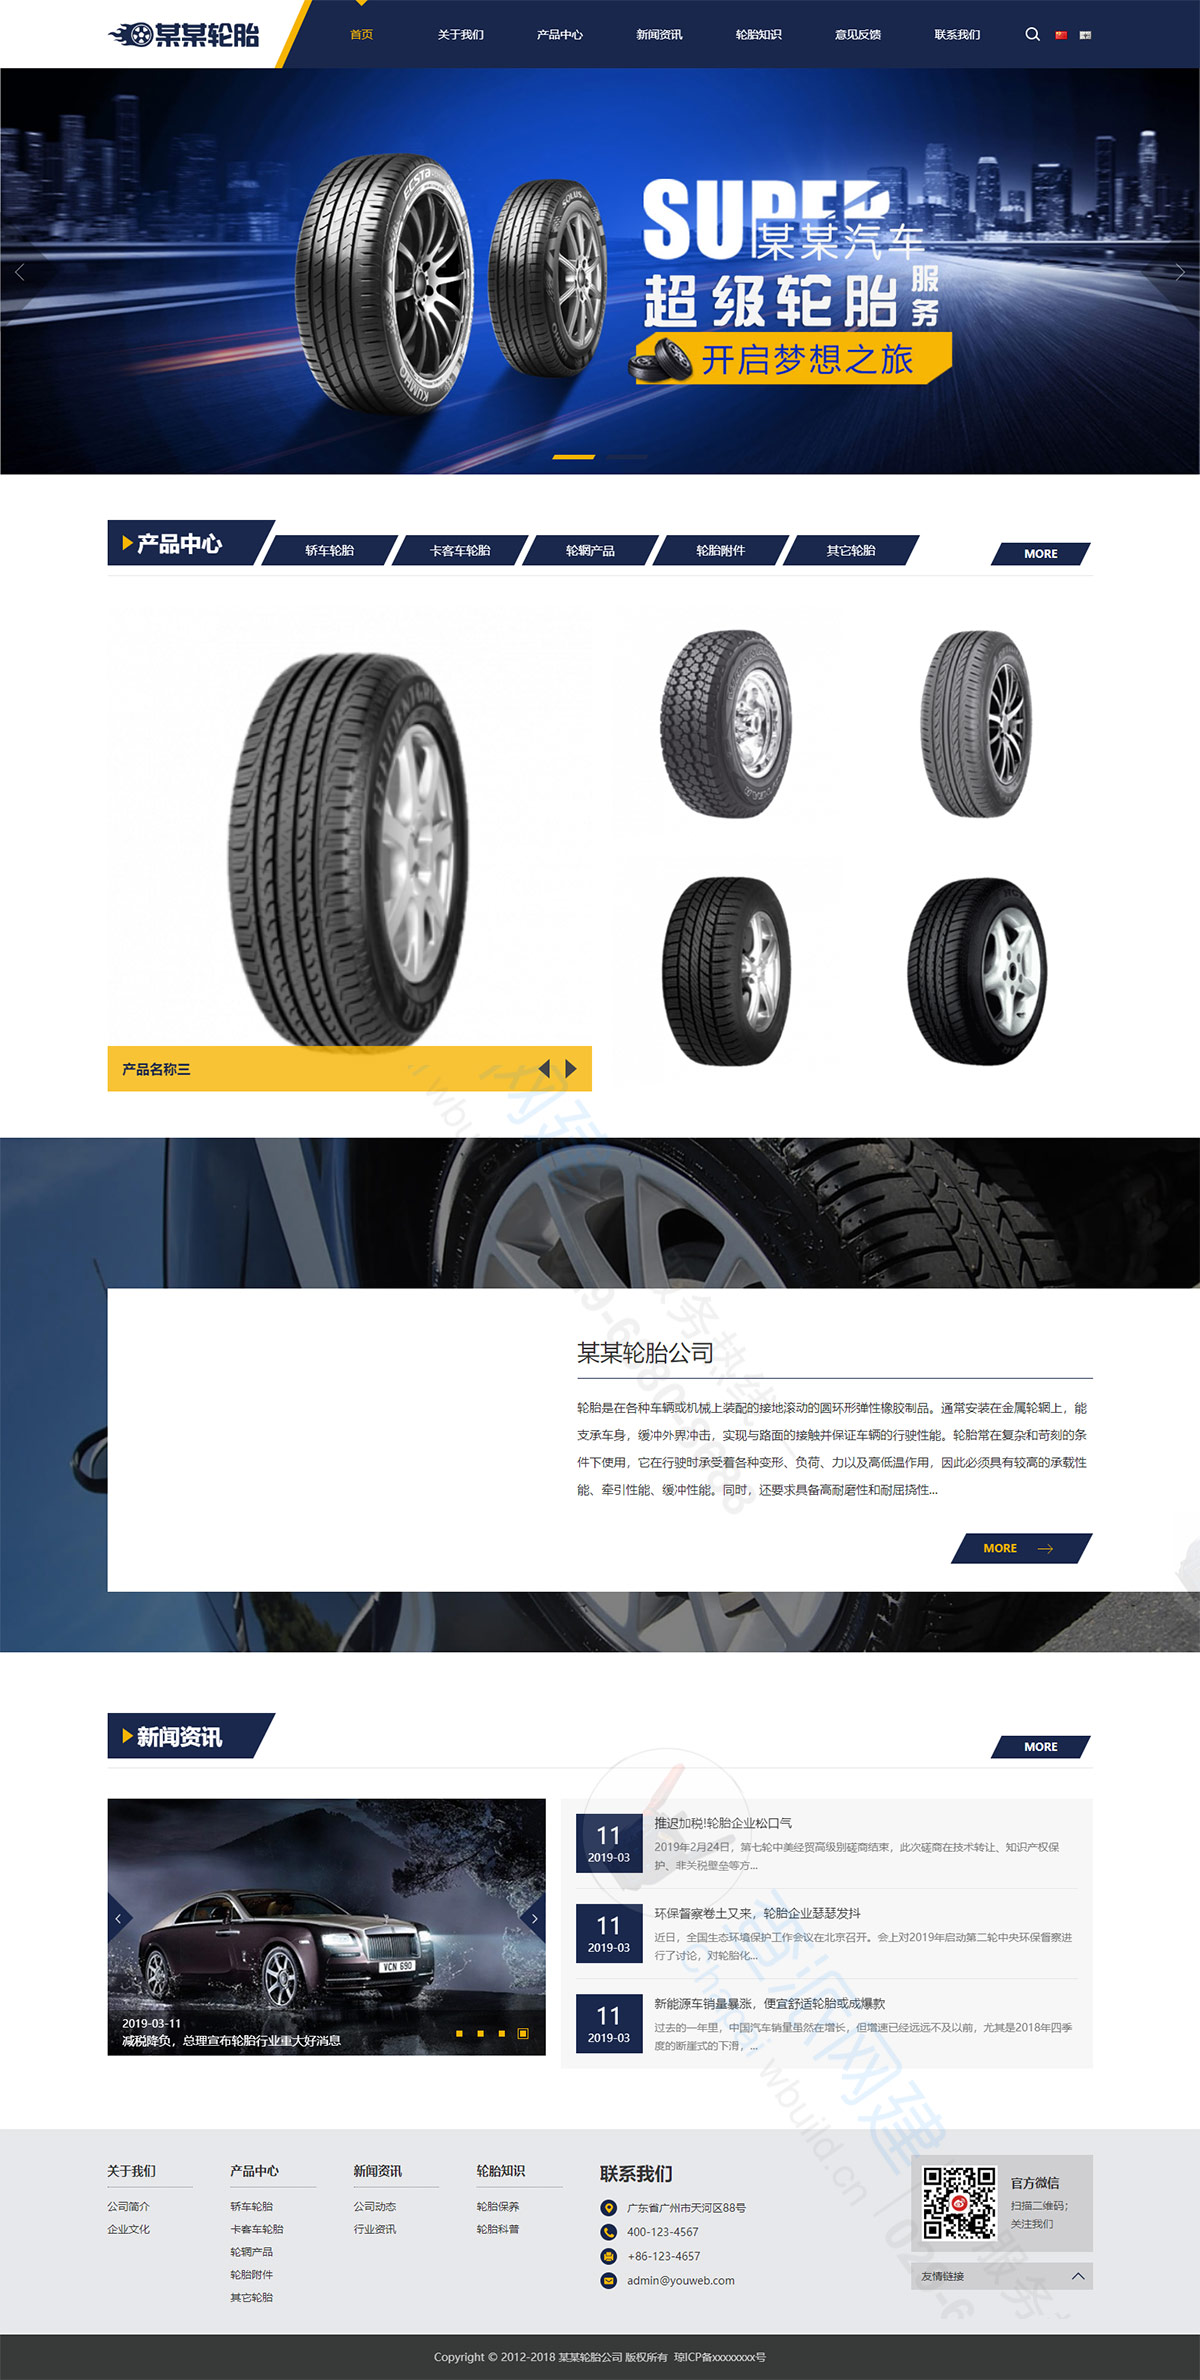 车辆轮胎轮辋汽车配件中英文双语类响应式企业网站建设模板